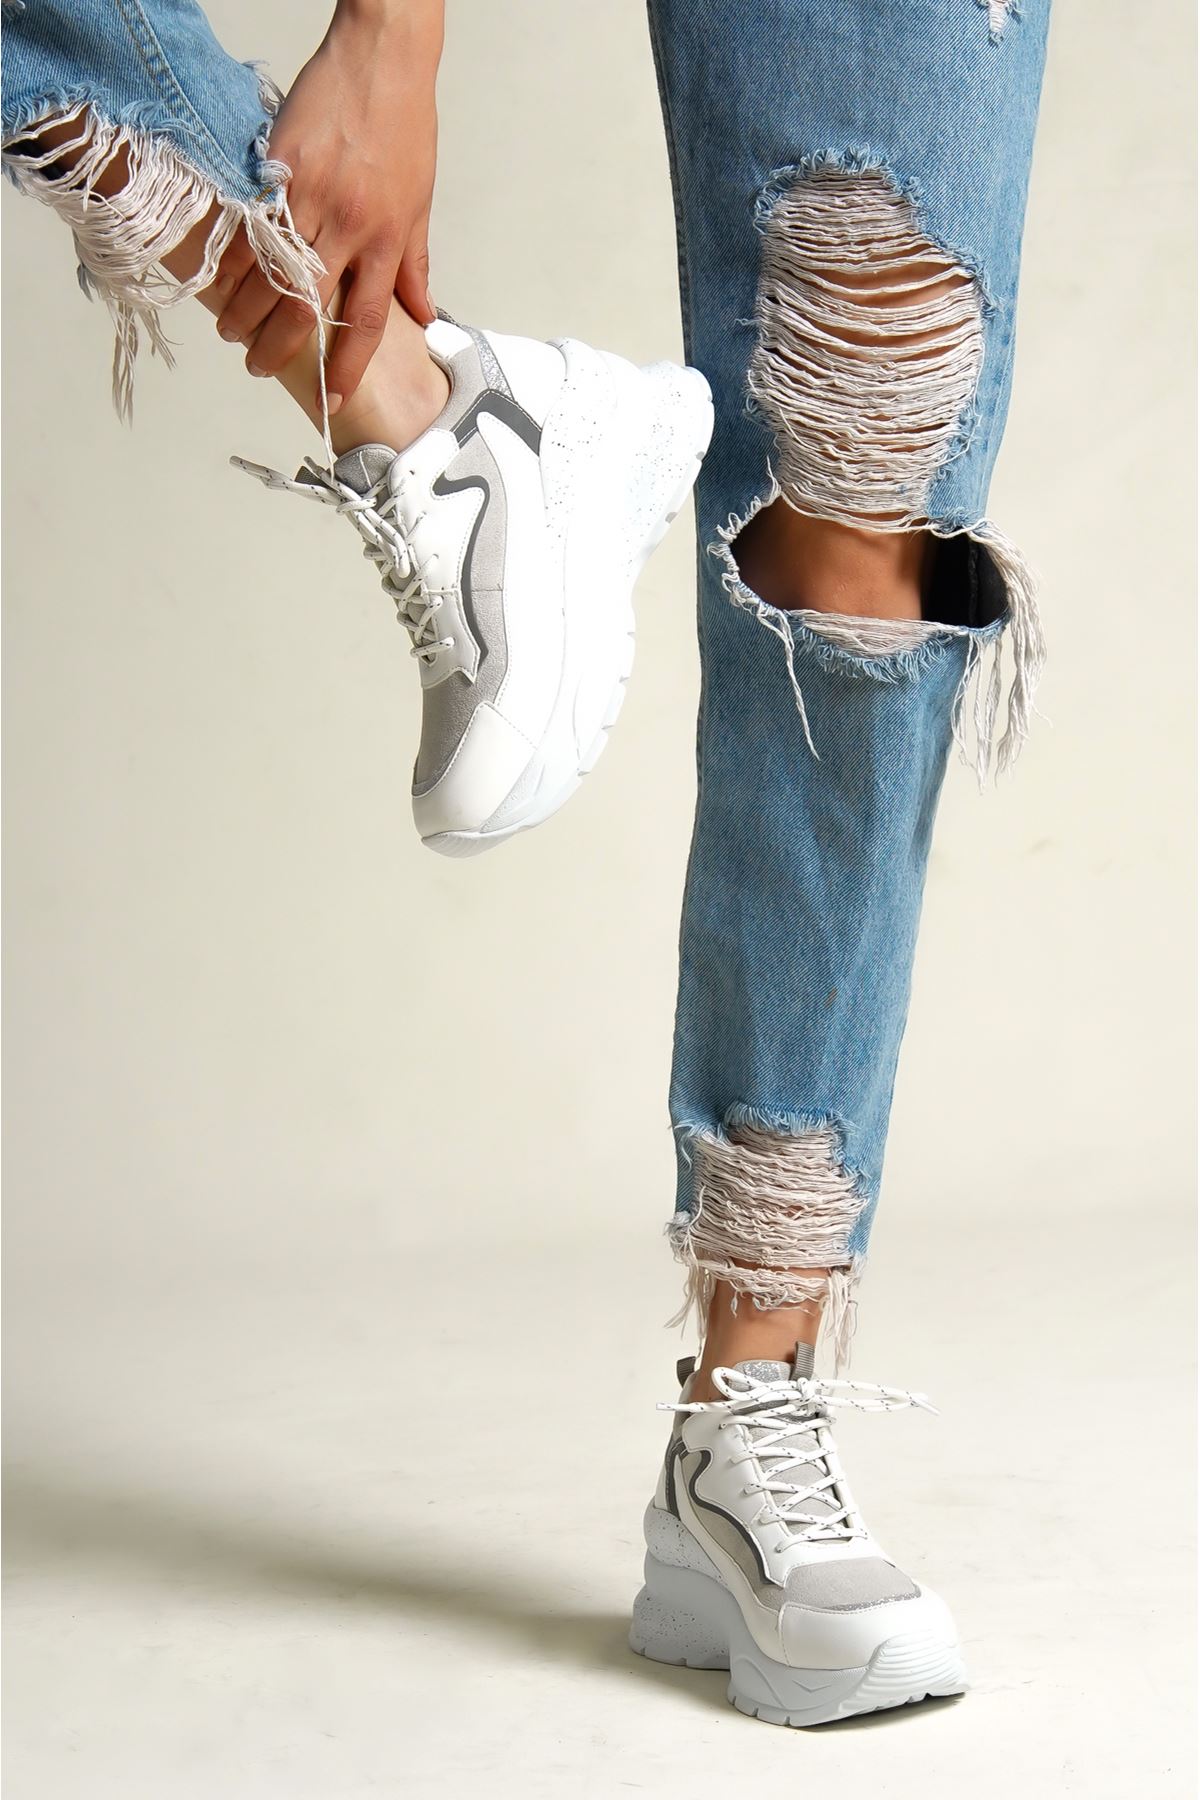 Sendys Gizli Topuk Kadın Sneaker Spor Ayakkabı BEYAZ CİLT